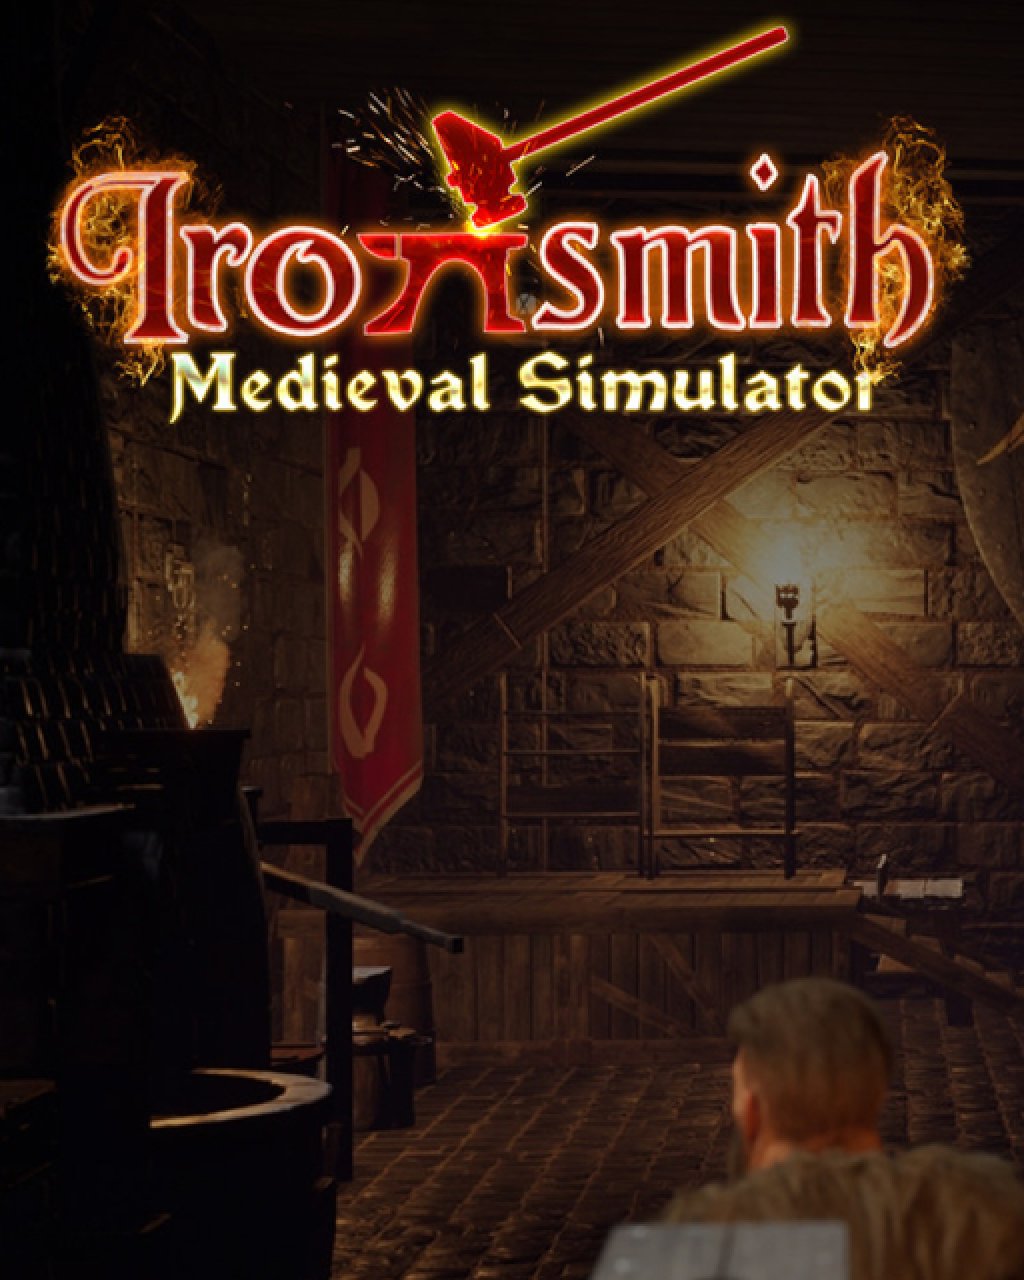 ESD Ironsmith Medieval Simulator